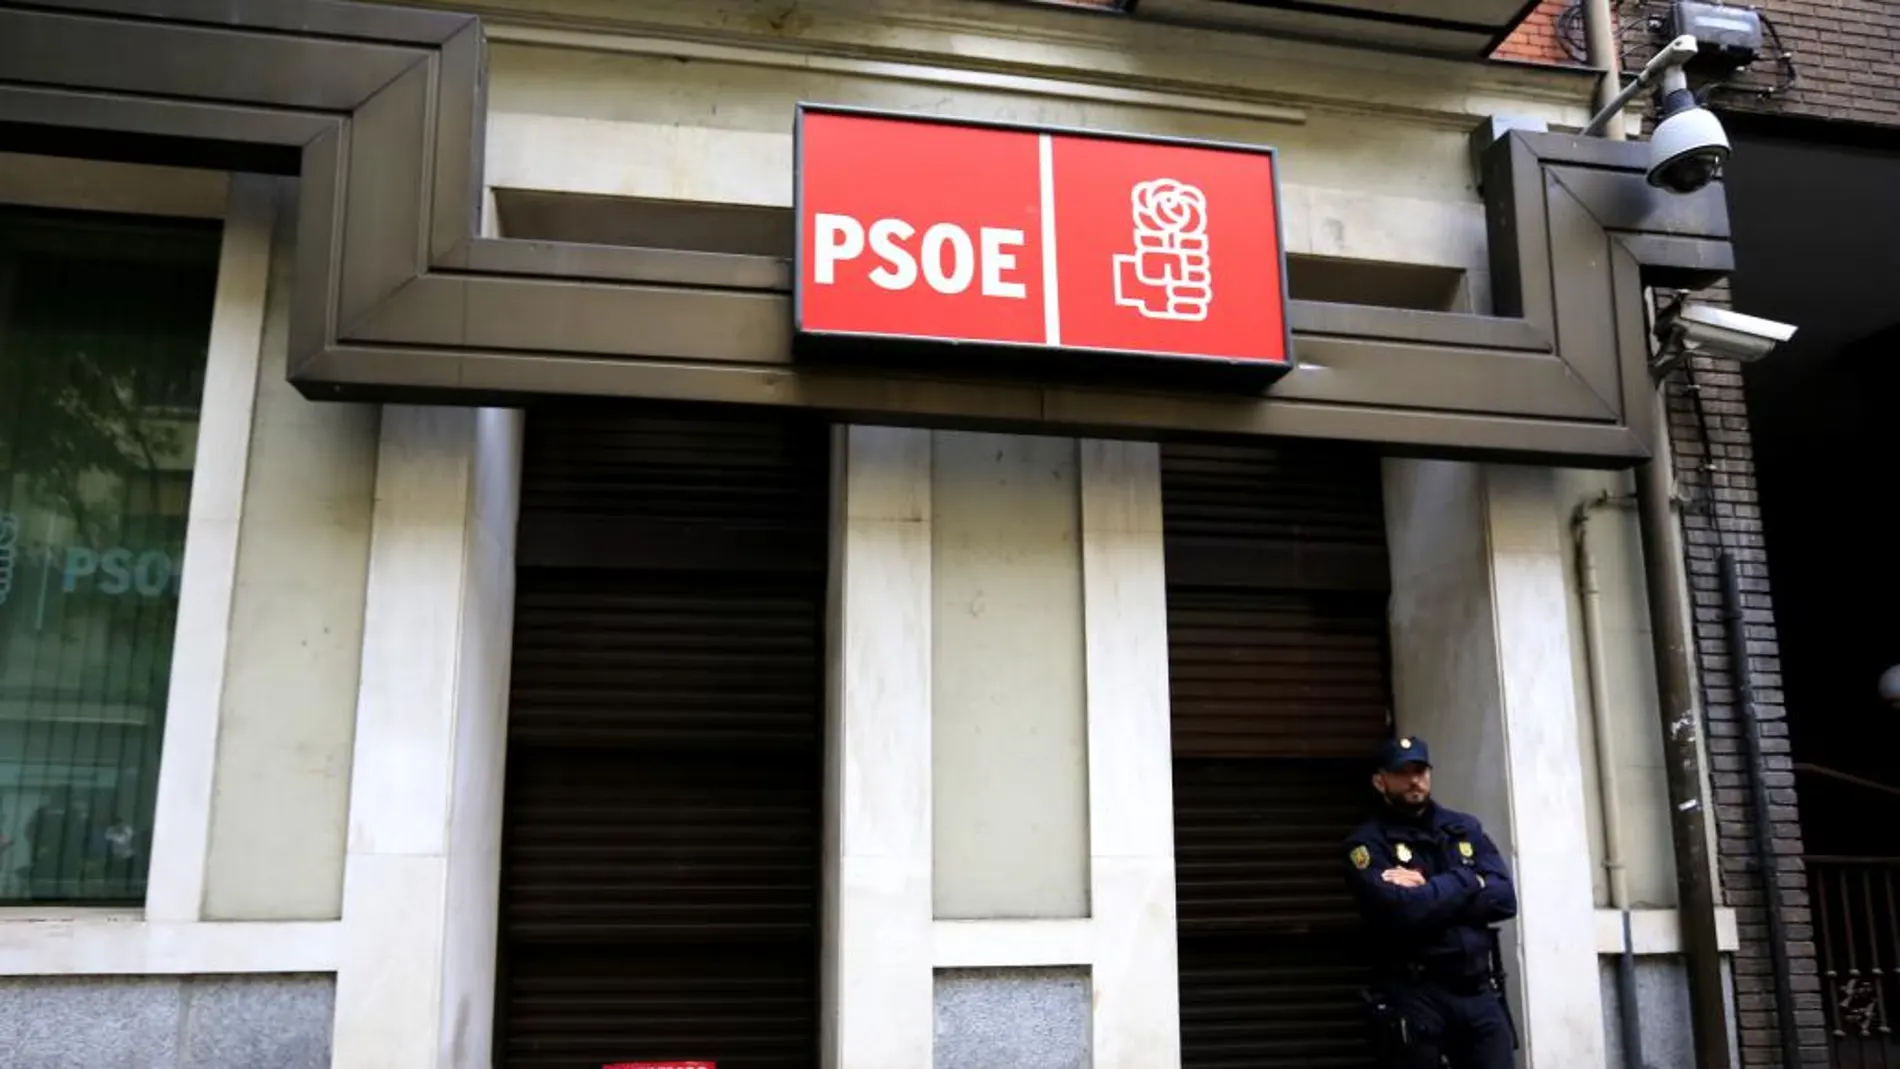 Militantes del PSOE depositaron ayer flores en la sede de Ferraz, tras manifestarse en contra de la abstención